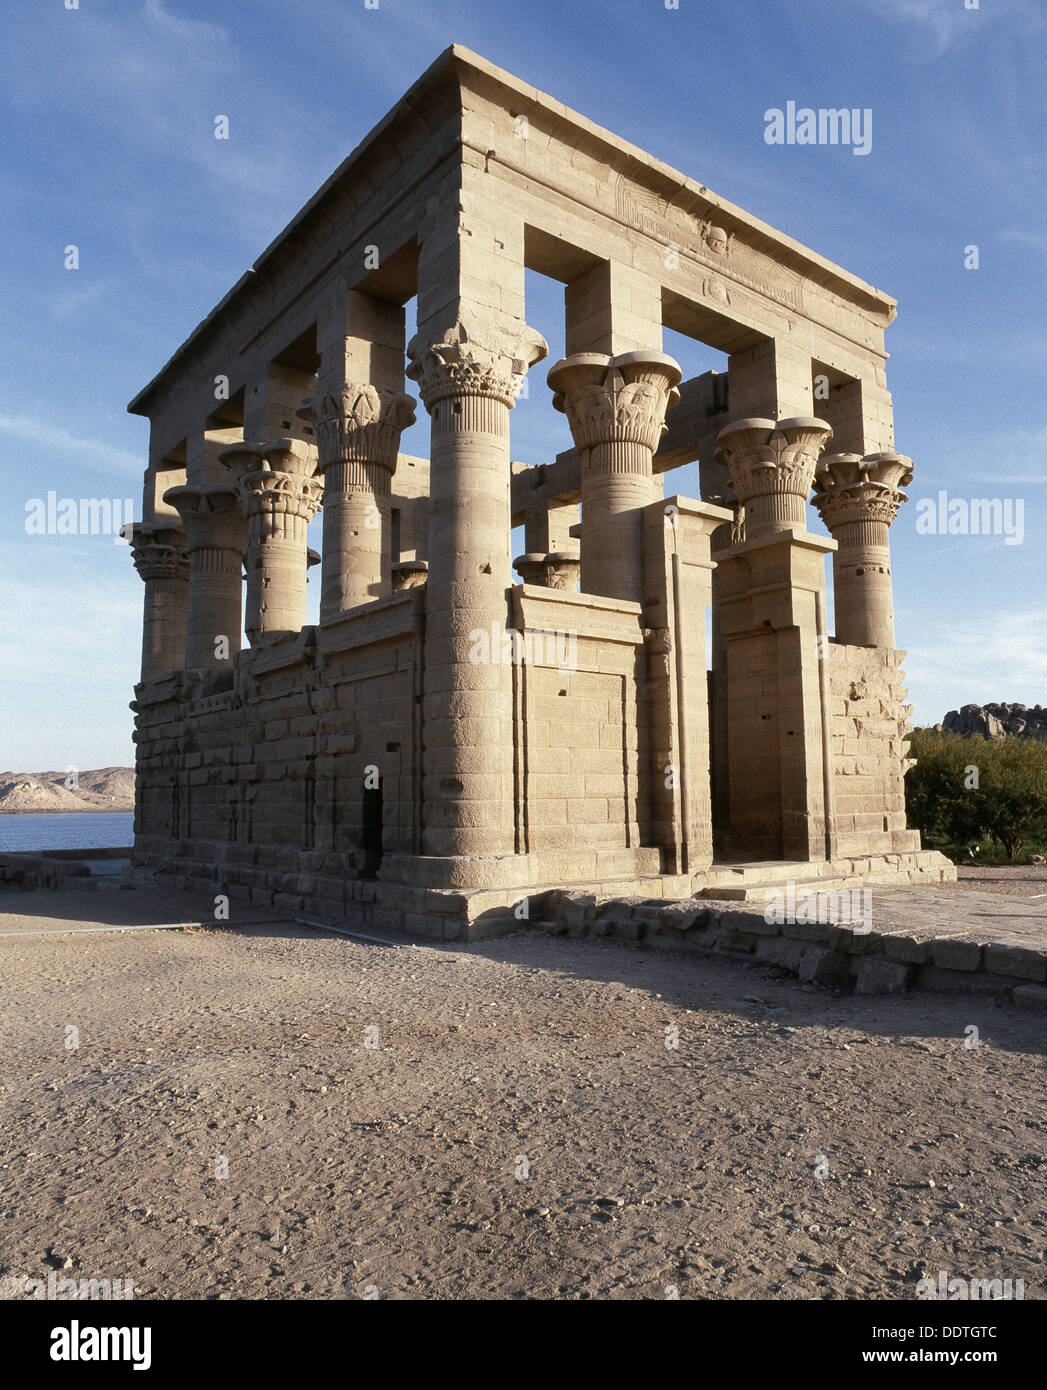 The Kiosk of Trajan, Philae, Egypt. Artist: Werner Forman Stock Photo